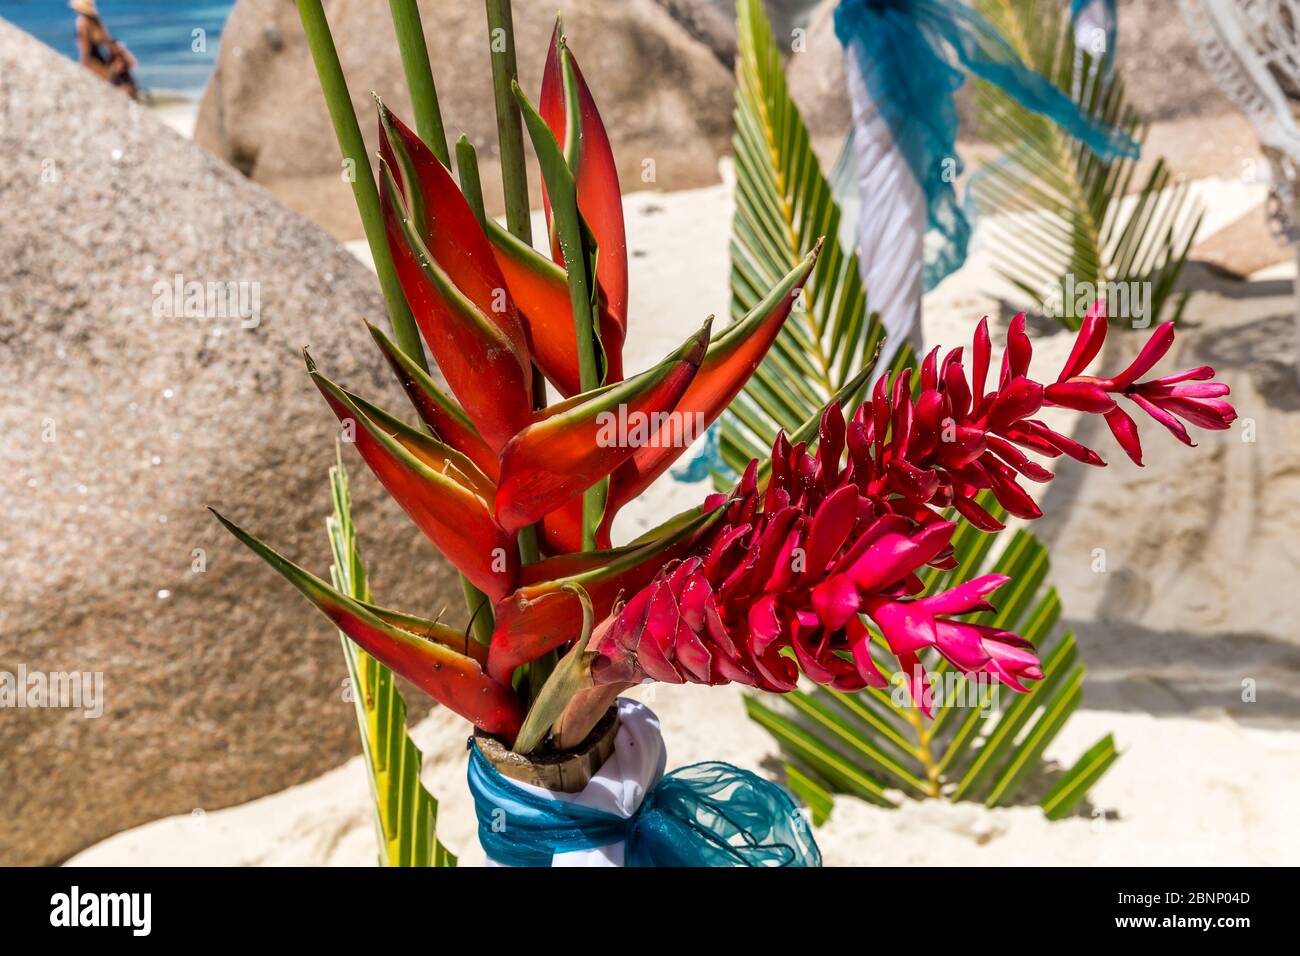 Décoration de mariage faite de feuilles de palmier, Heliconia (Heliconia bihai) et de gingembre rouge (Ginger) sur la plage Anse Source d'argent, île de la Digue, Seychelles, Océan Indien, Afrique Banque D'Images